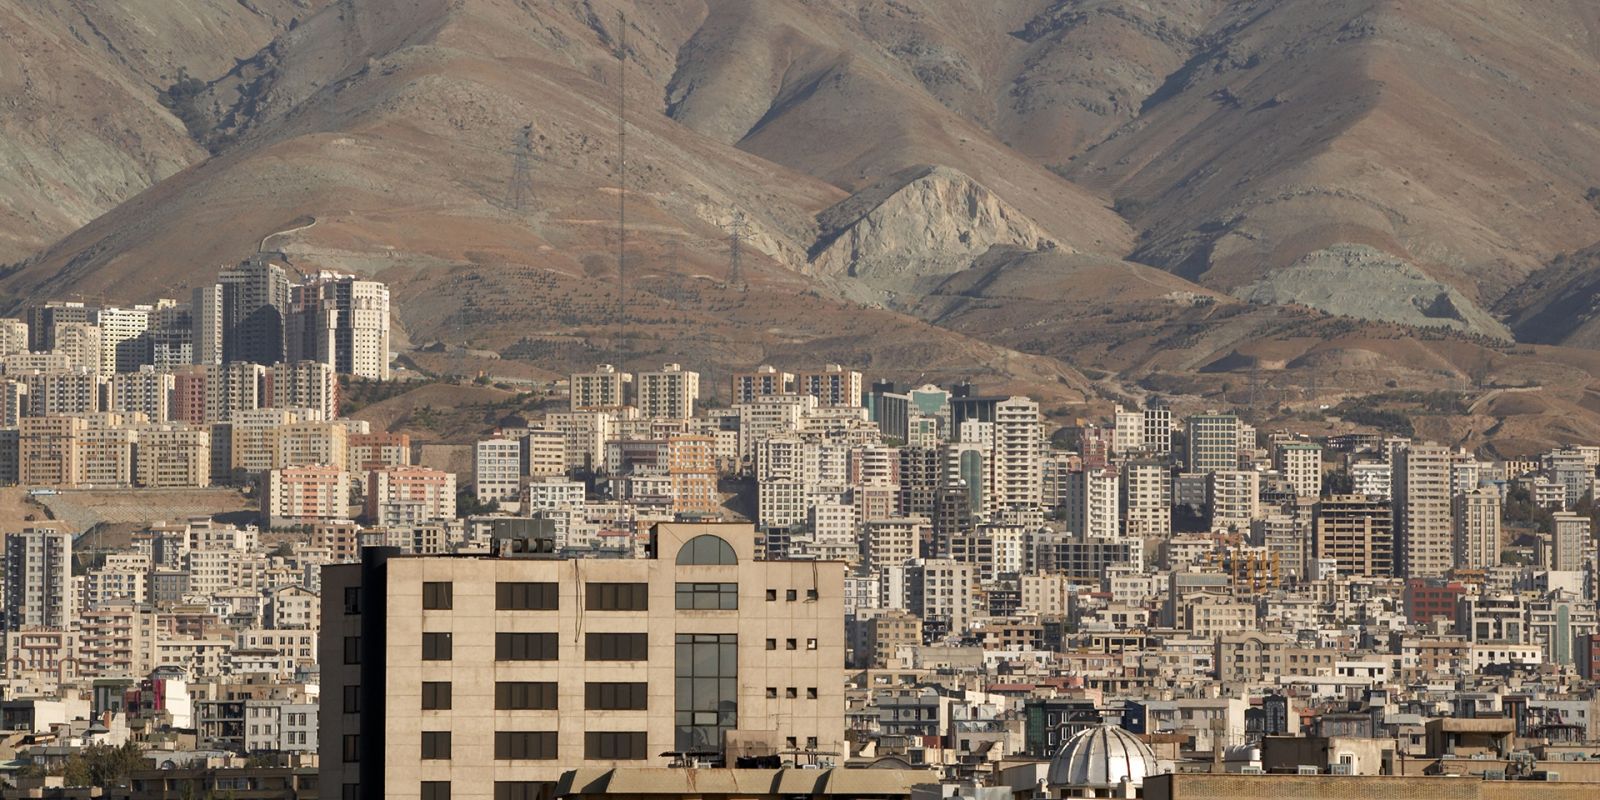 Teheran © Kamyar Adl / Alamy Stock Photo